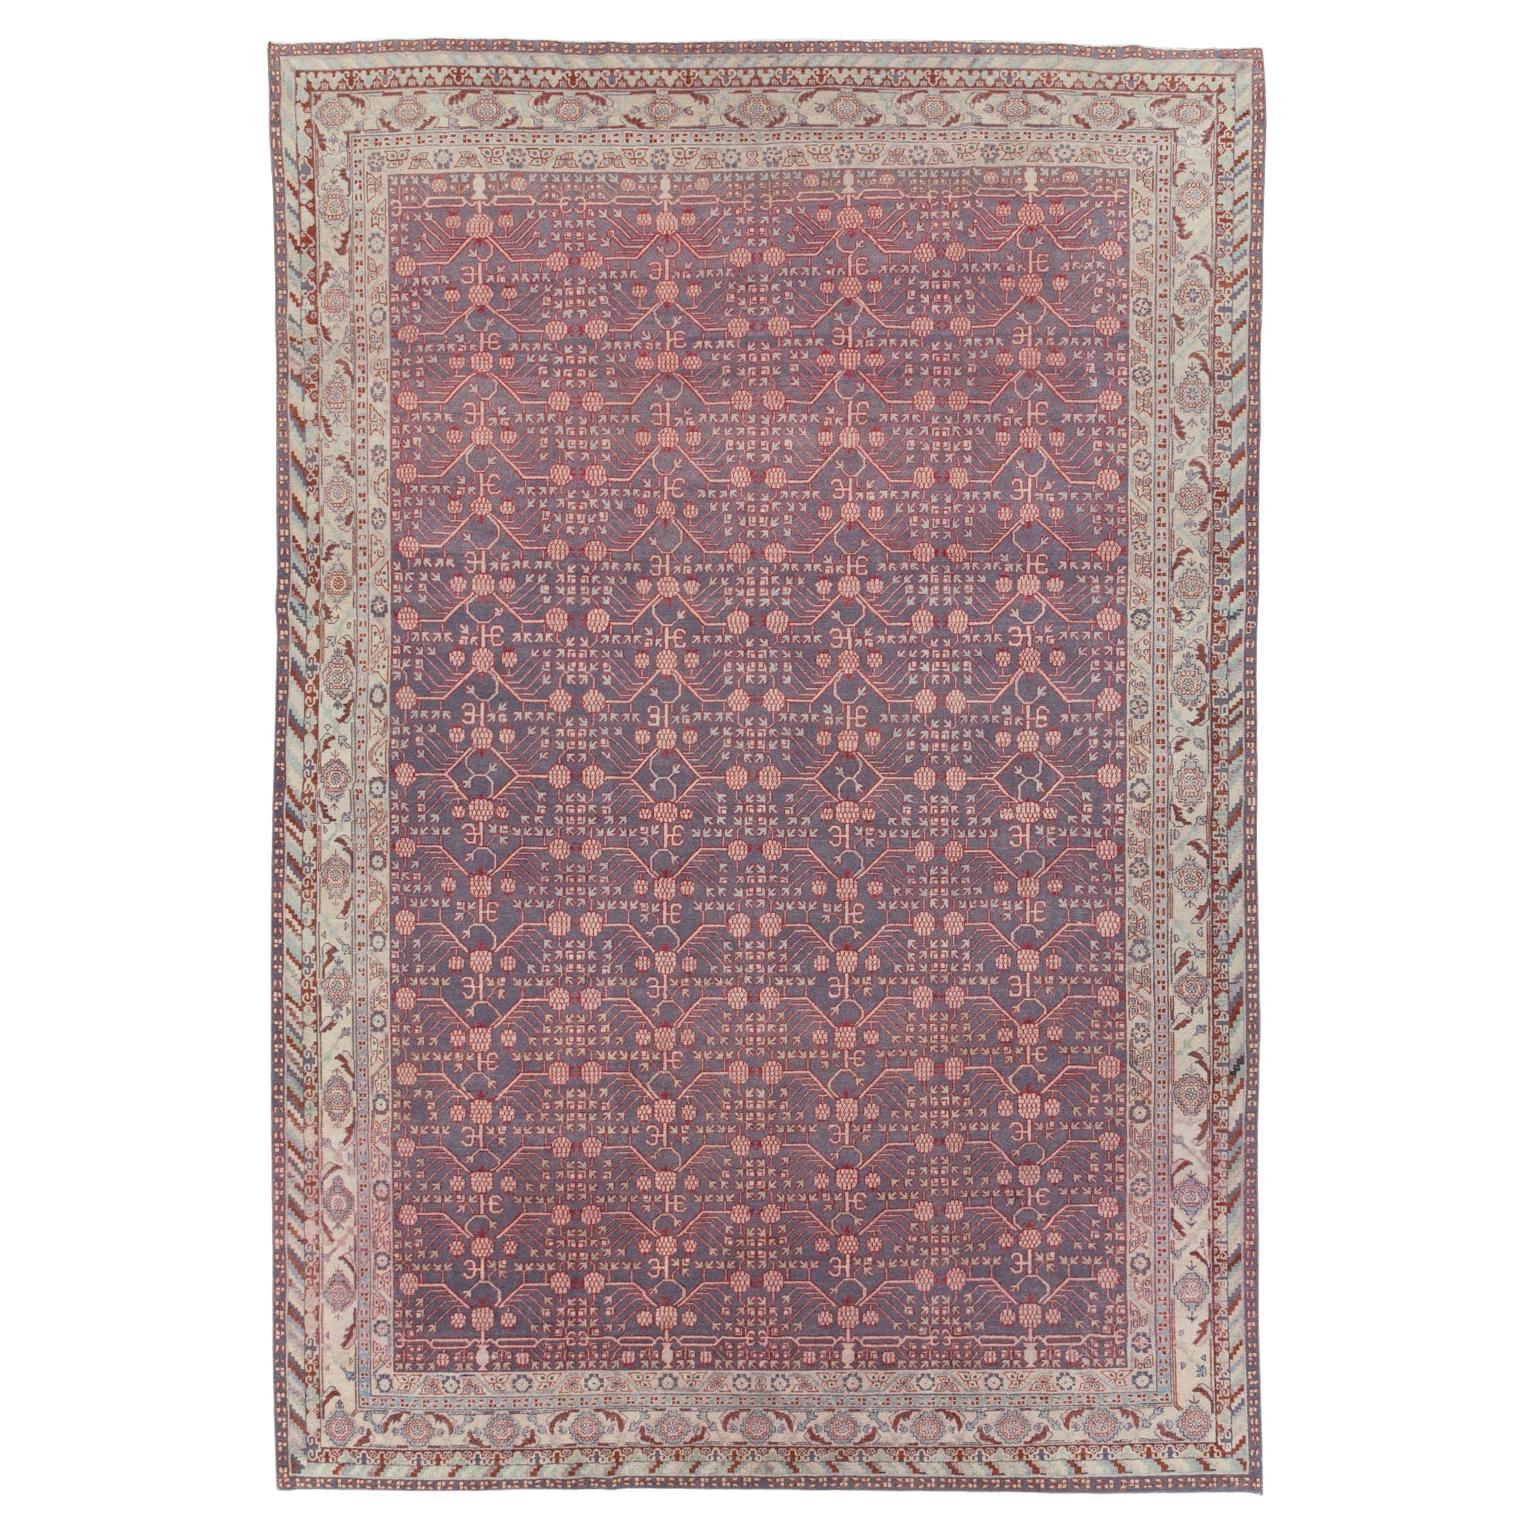 Handgefertigter Ostturkestan-Khotan-Teppich in Zimmergröße aus dem frühen 20. Jahrhundert